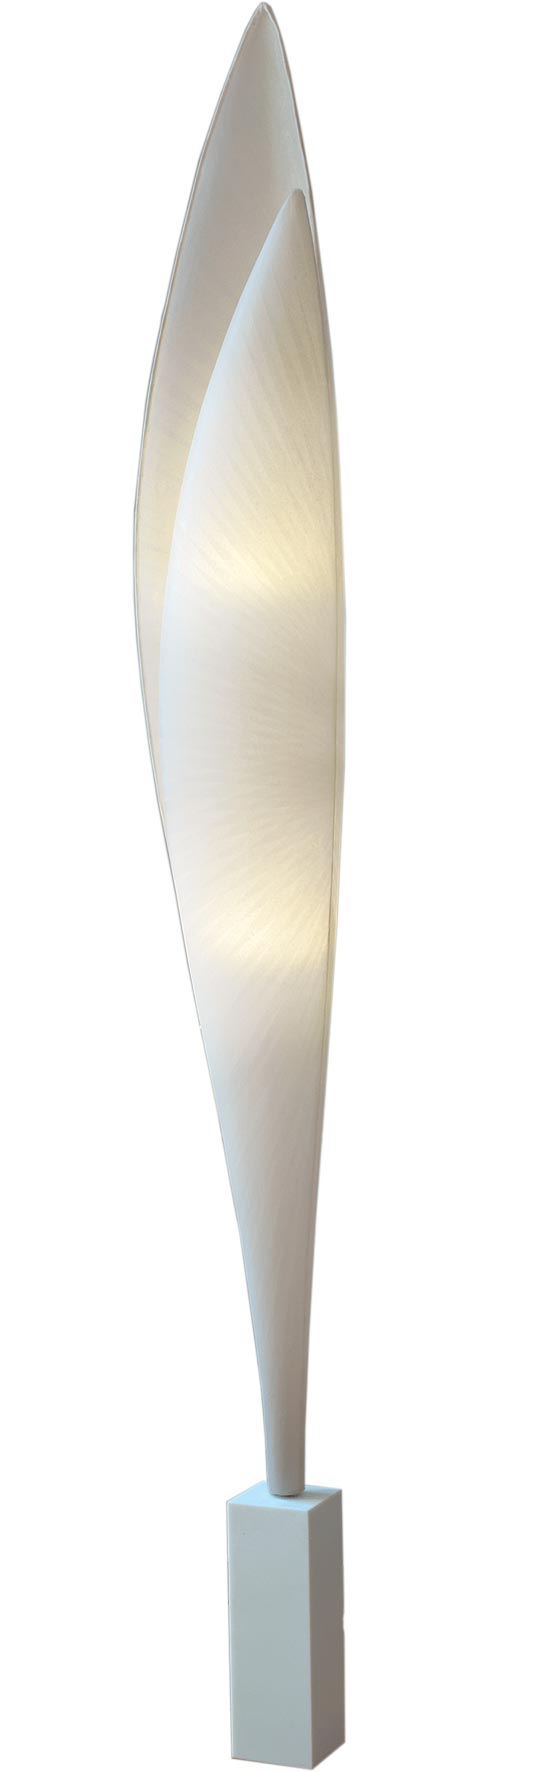 Envol lampadaire en double aile de papier japonais. Céline Wright. 